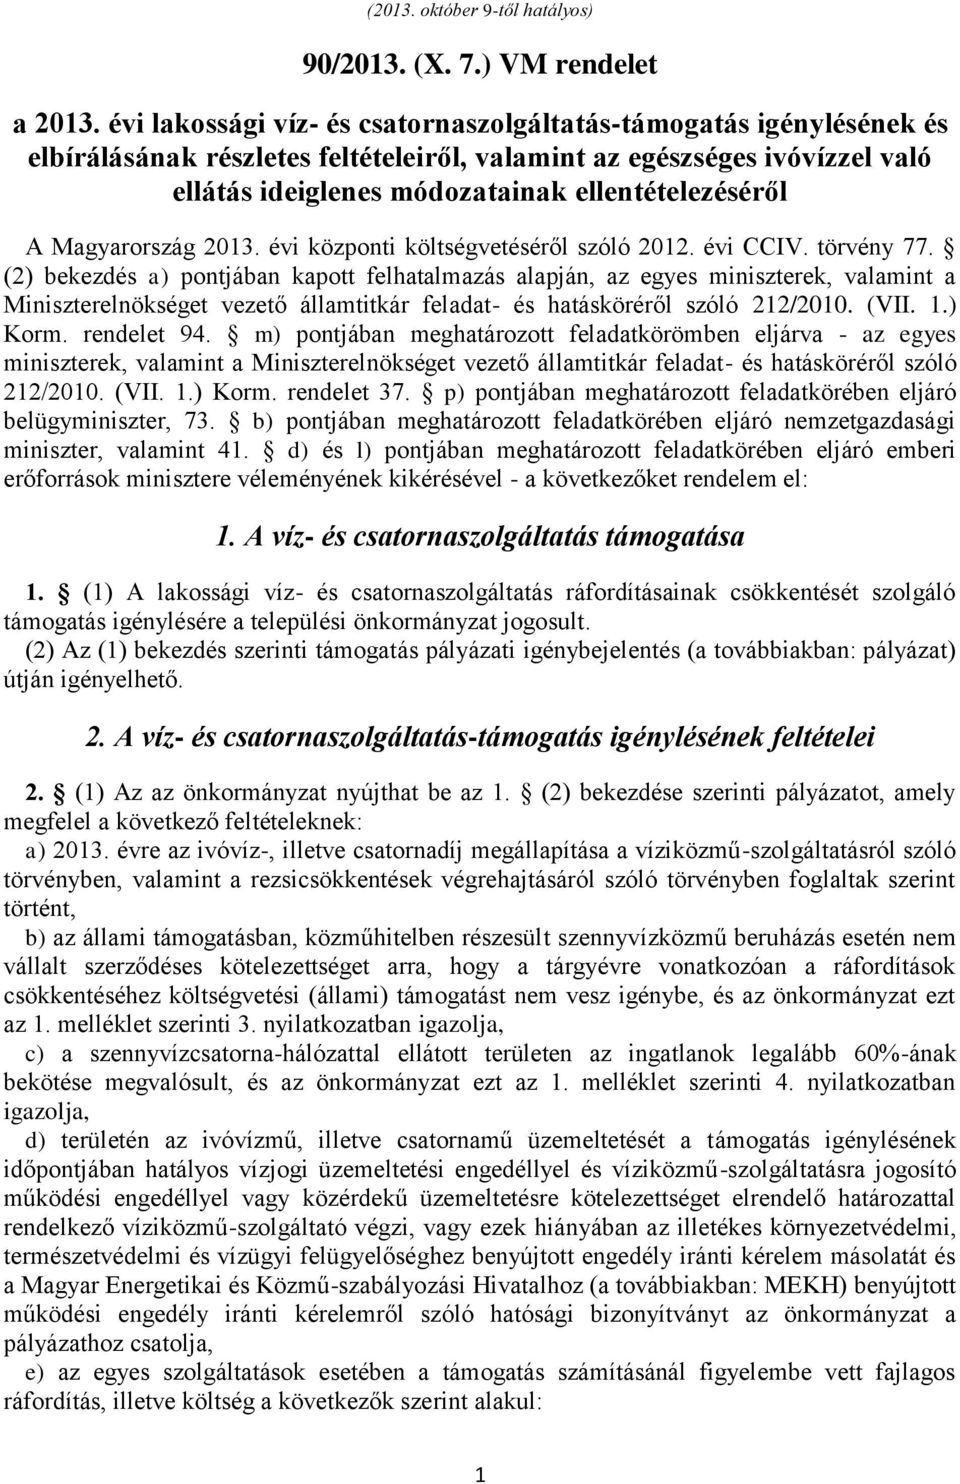 Magyarország 2013. évi központi költségvetéséről szóló 2012. évi CCIV. törvény 77.